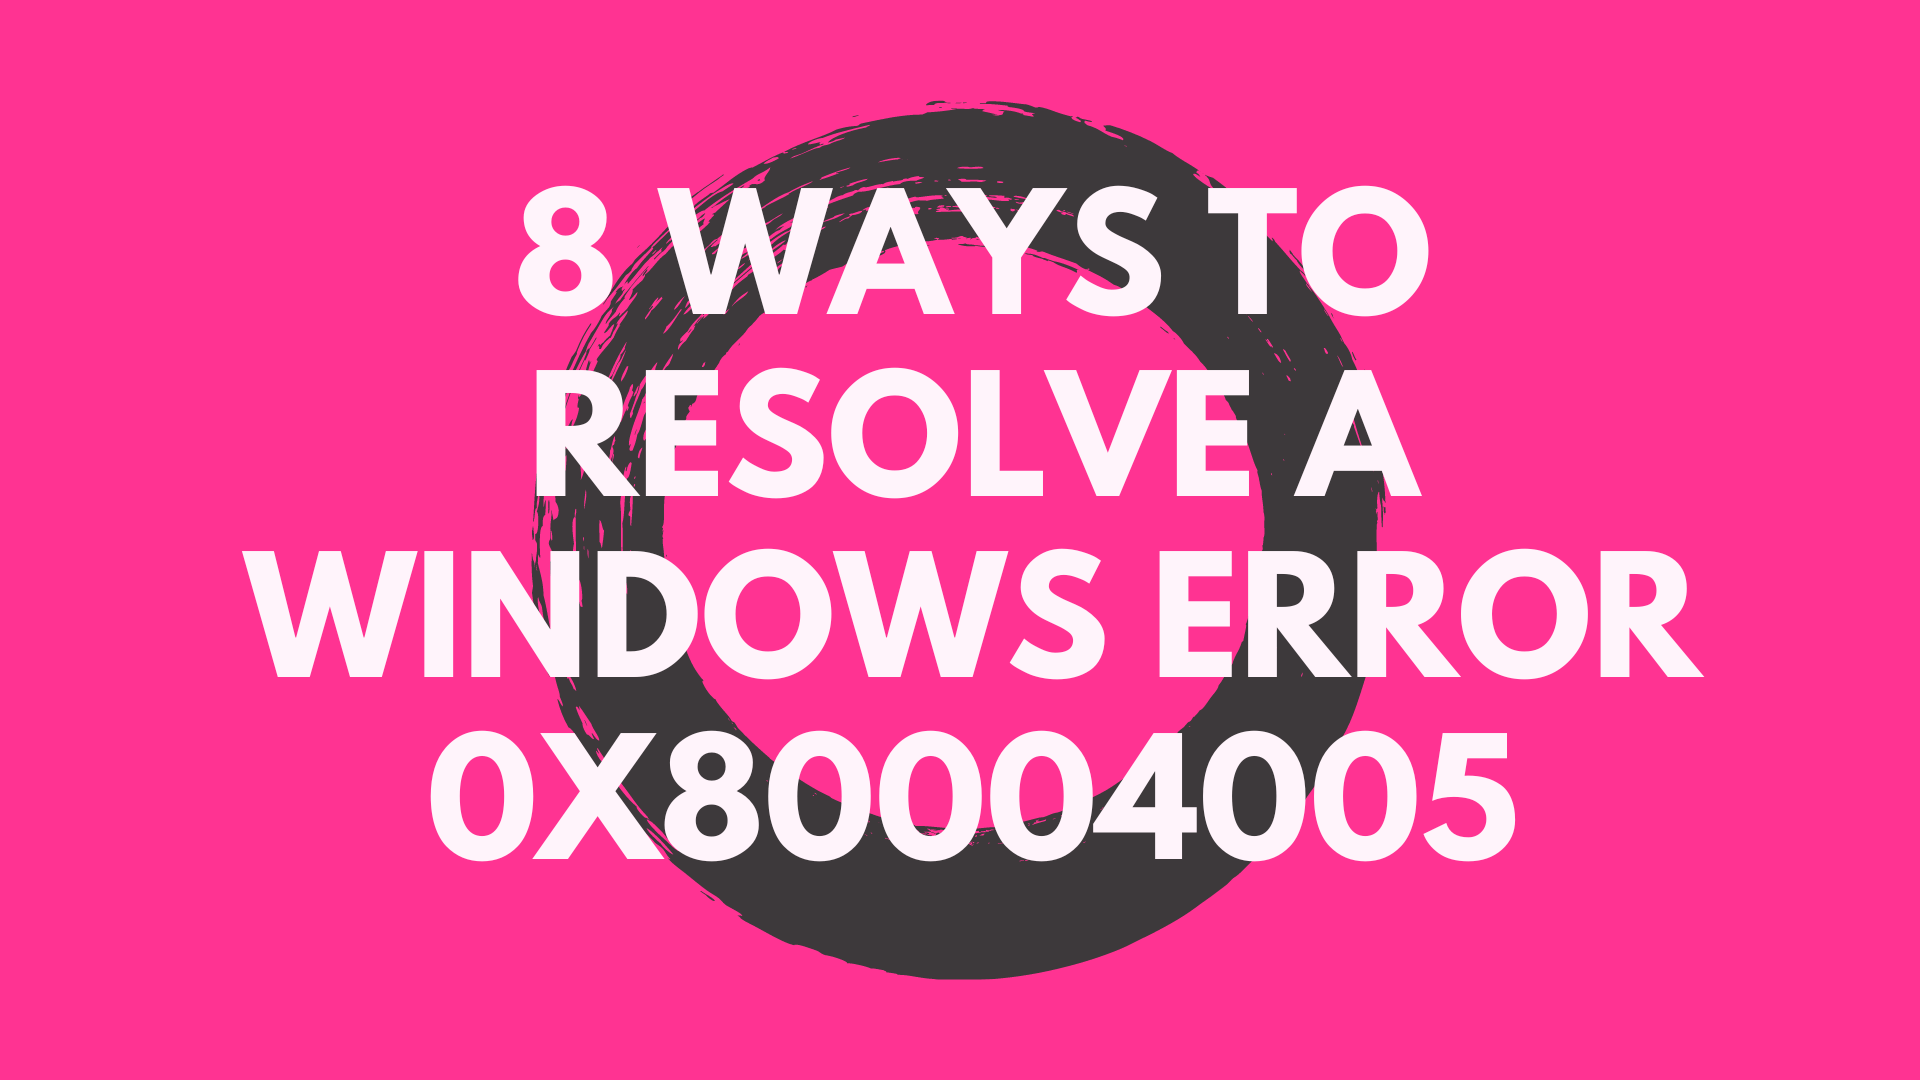 8 Ways to Resolve a Windows Error 0x80004005